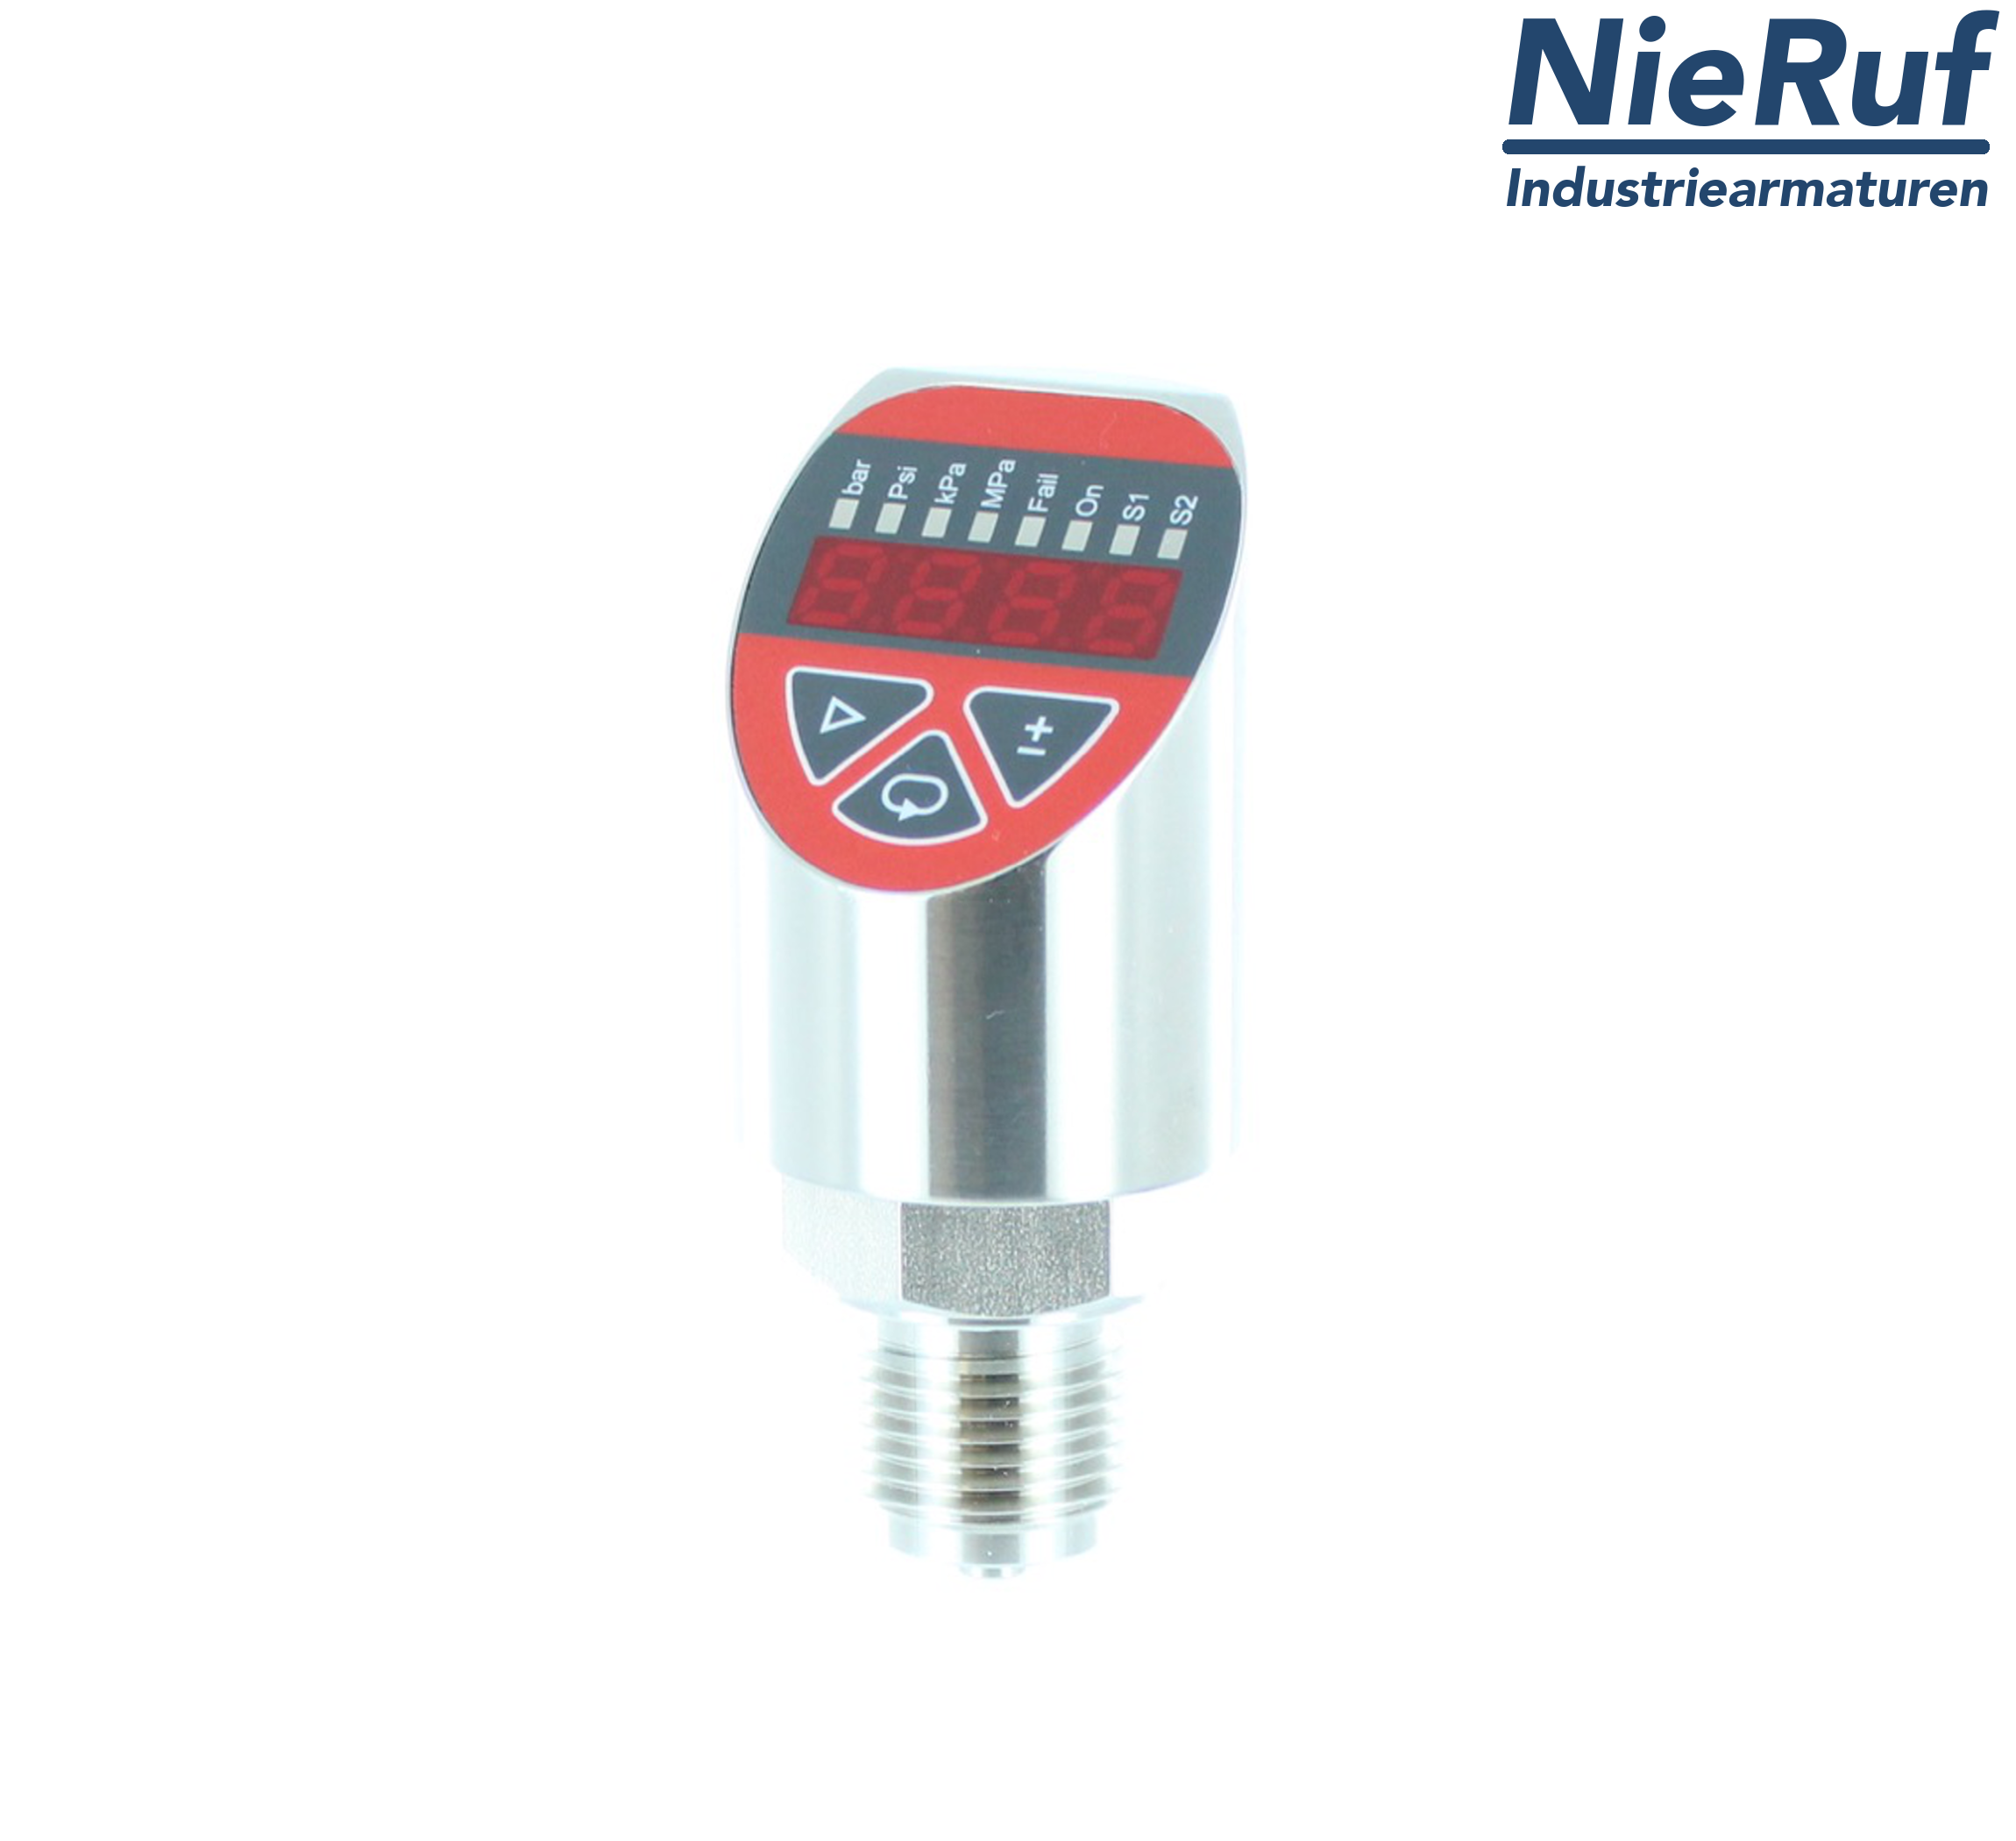 digital pressure sensor G 1/2" B IB 4-wire: 1xPNP, 1x4 - 20mA FPM 0,0 - 4,0 bar